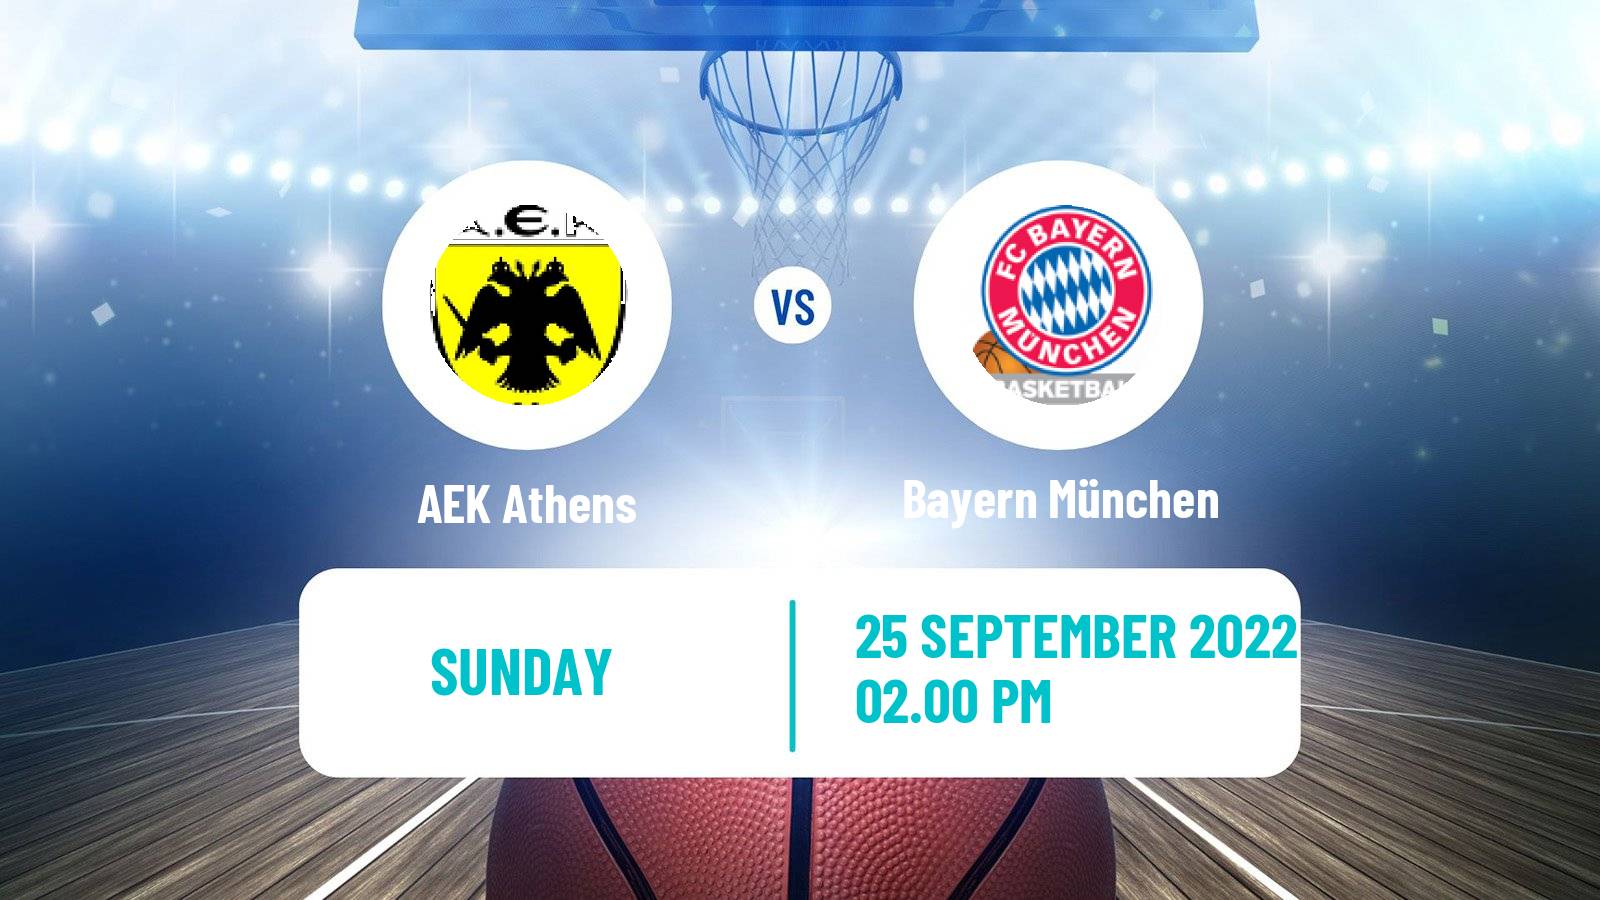 Basketball Club Friendly Basketball AEK Athens - Bayern München